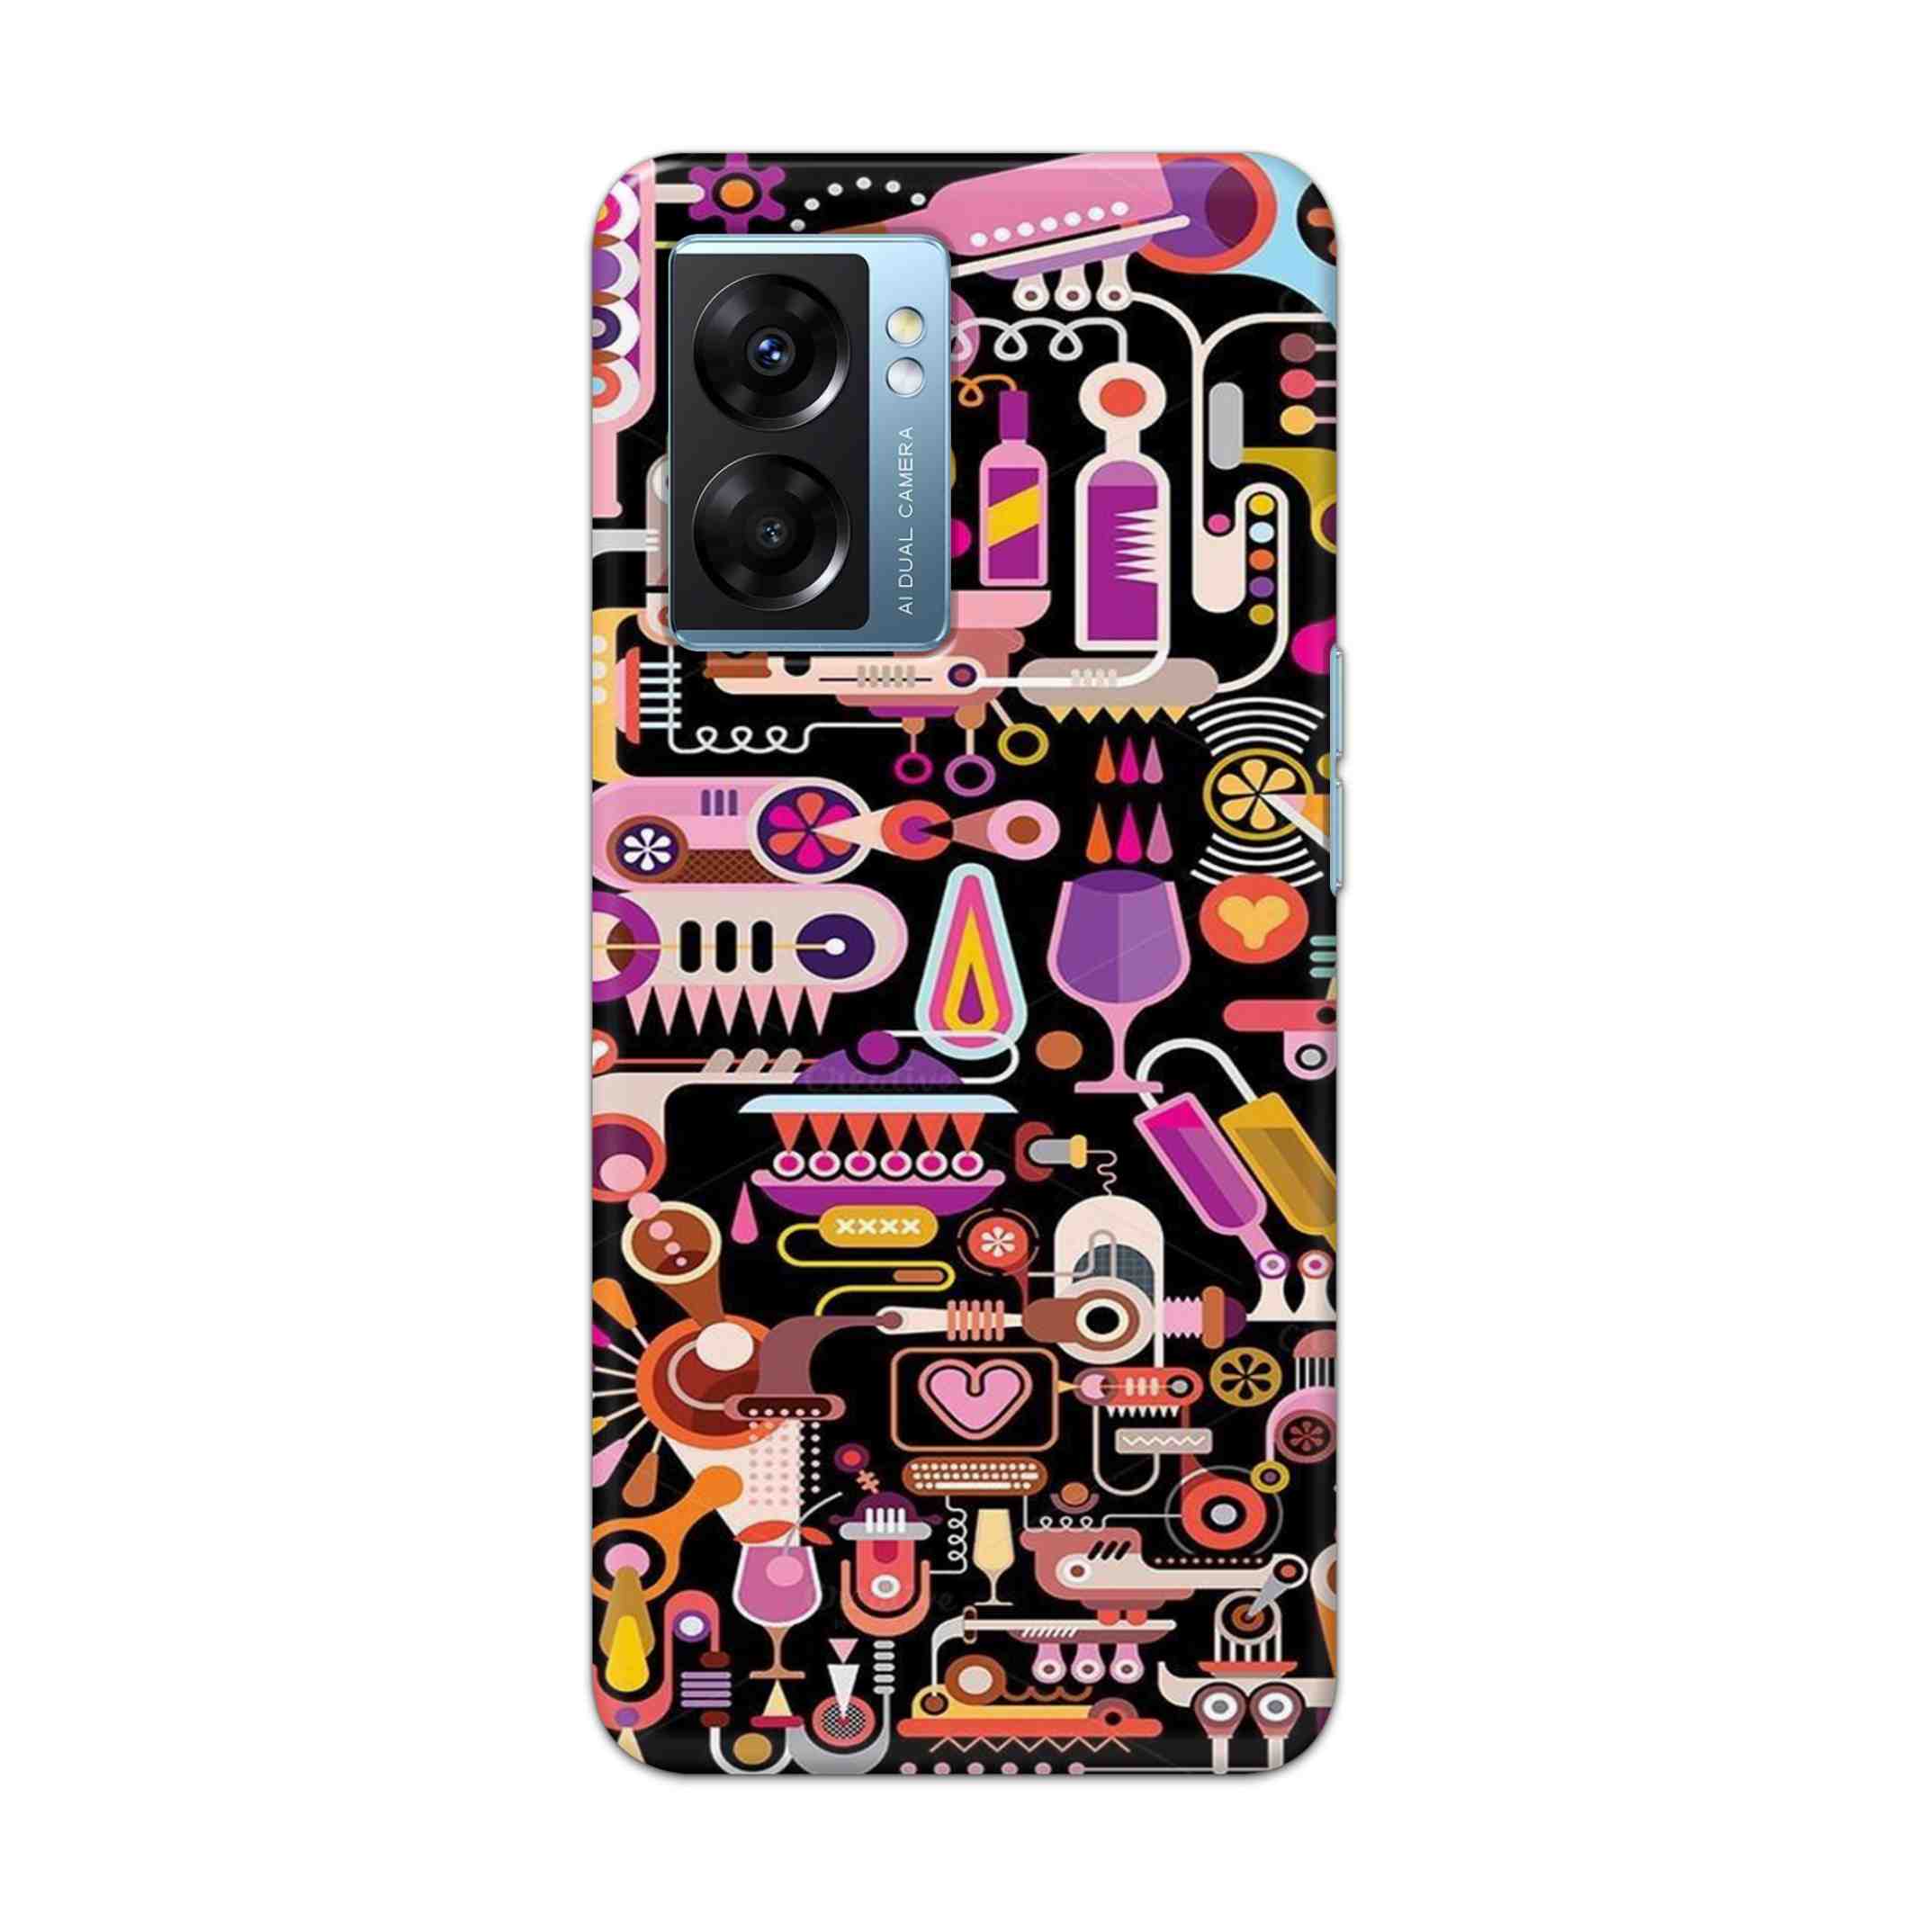 Buy Lab Art Hard Back Mobile Phone Case Cover For OPPO K10 5G Online